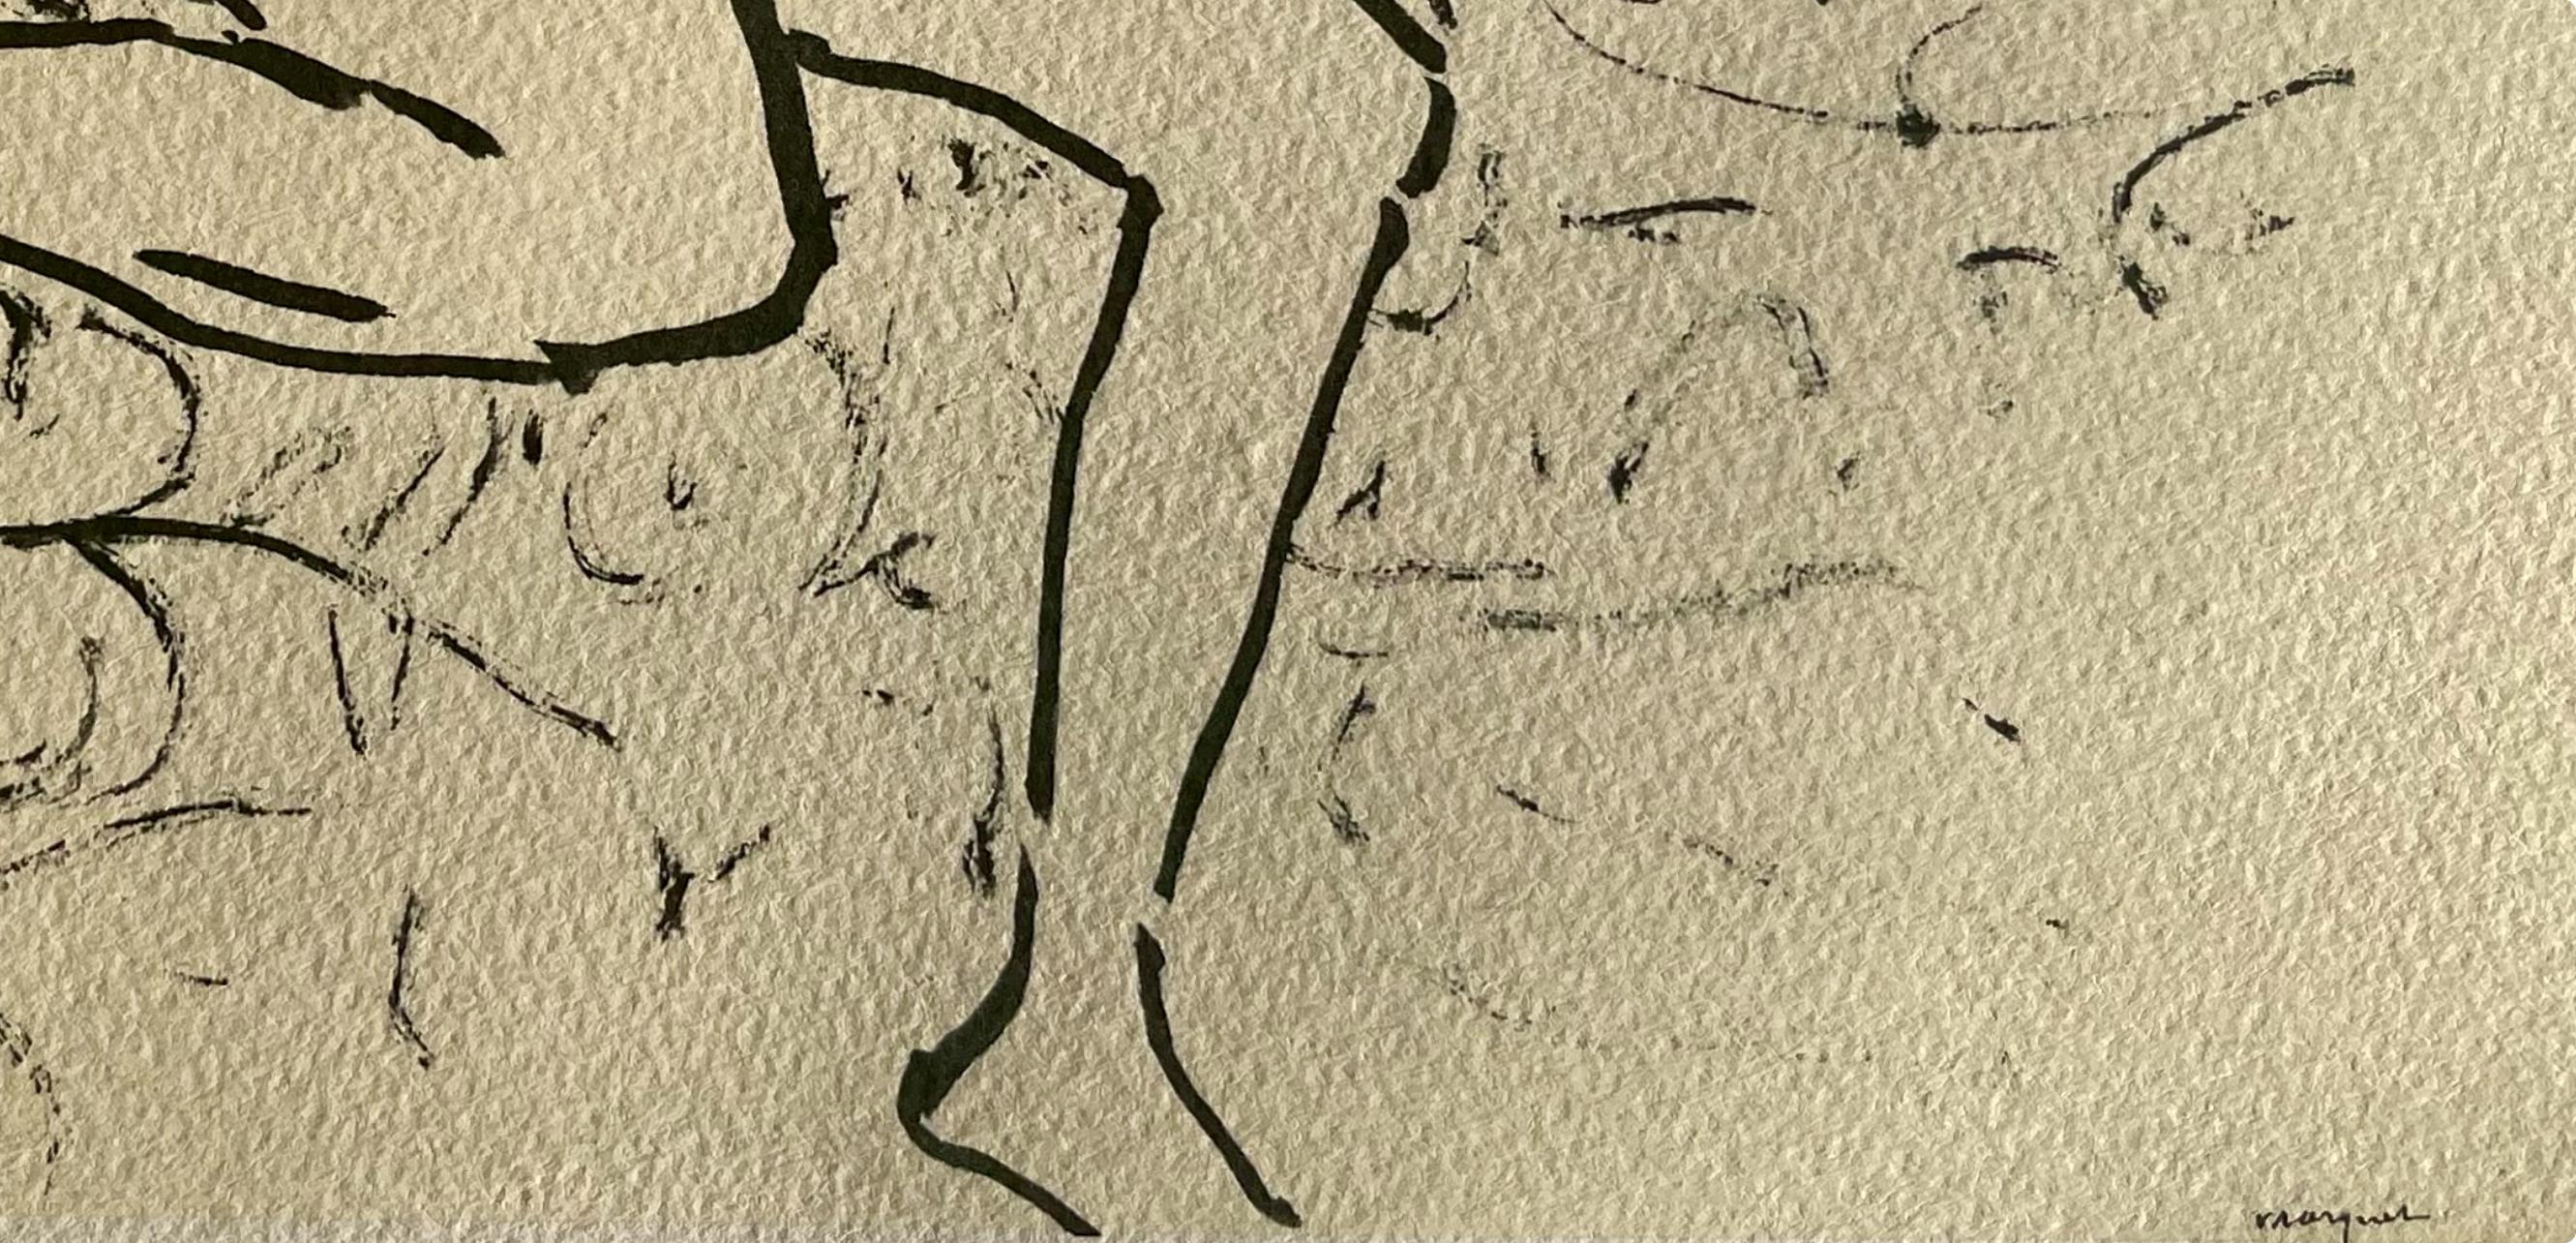 Lithographie auf Vélin du Canson & Montgolfier Vidalon-Les-Annonay Papier. Aufschrift: unsigniert und nicht nummeriert, wie ausgegeben. Guter Zustand. Anmerkungen: Aus dem Band, Marquet, 1948. Herausgegeben von George Besson, Paris; gedruckt von Les